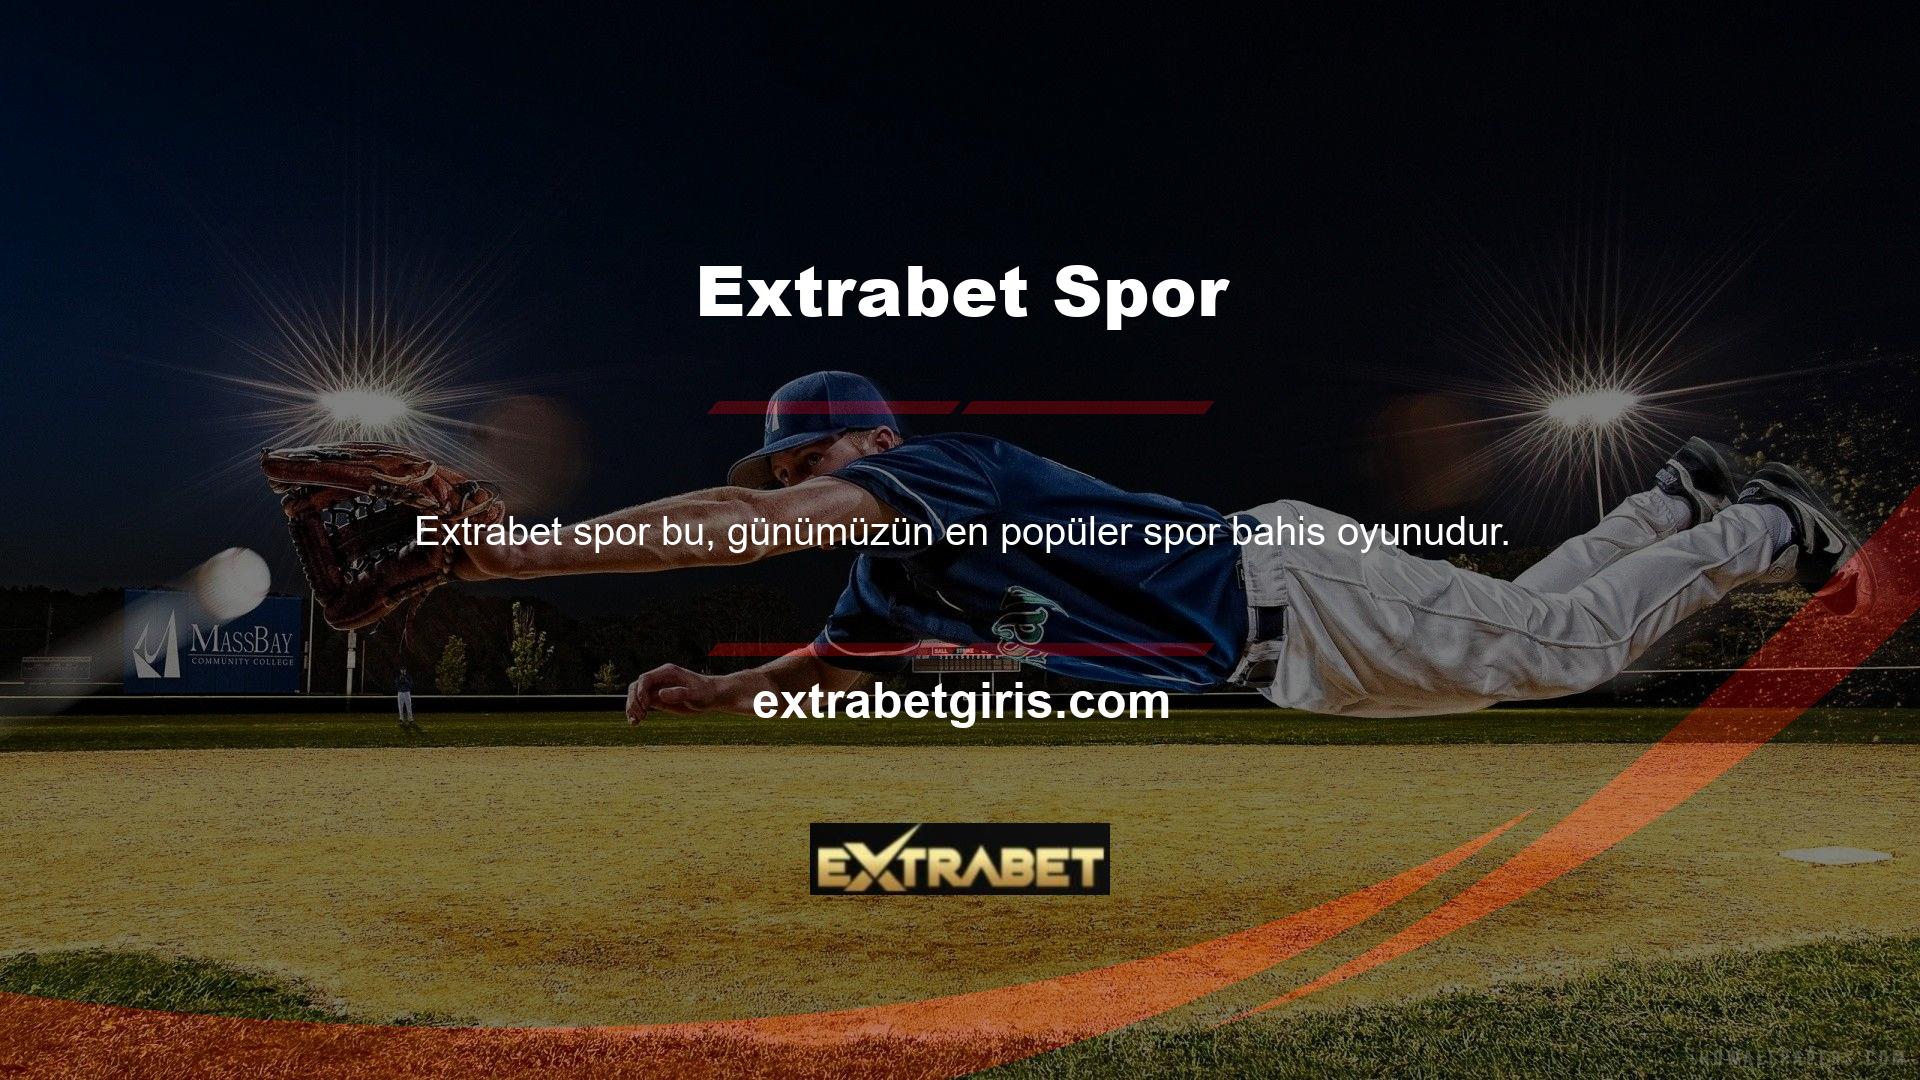 Extrabet Sportsbook, üyelerine farklı spor dallarında farklı bahis oyunları oynama fırsatı verir